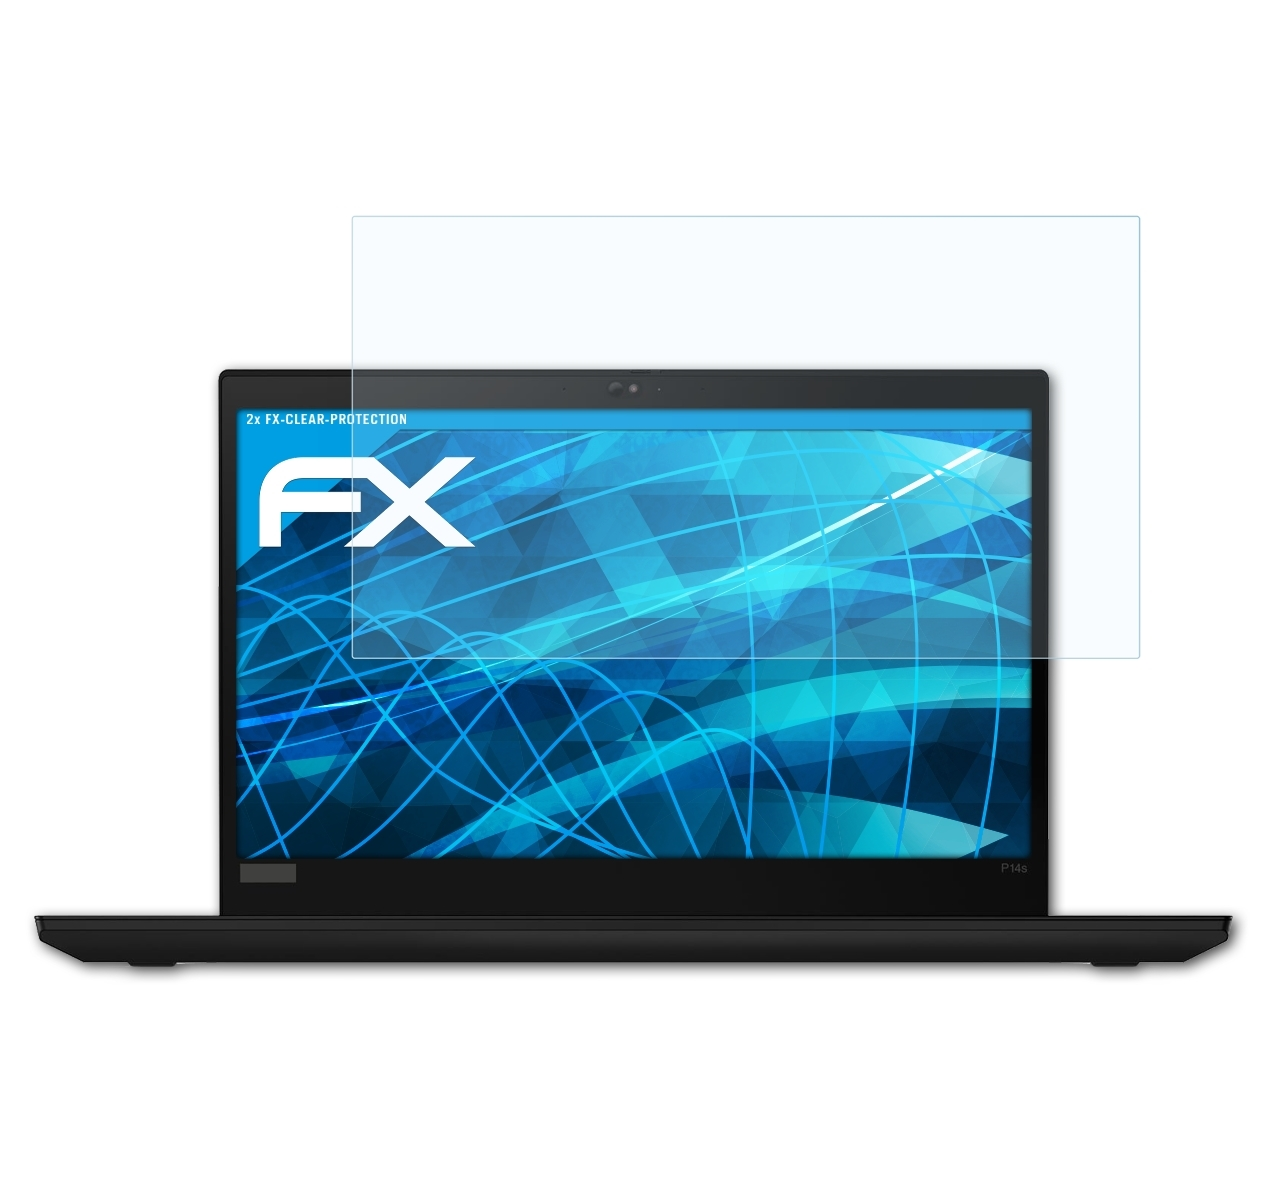 ATFOLIX 2x FX-Clear ThinkPad Lenovo Displayschutz(für P14s)